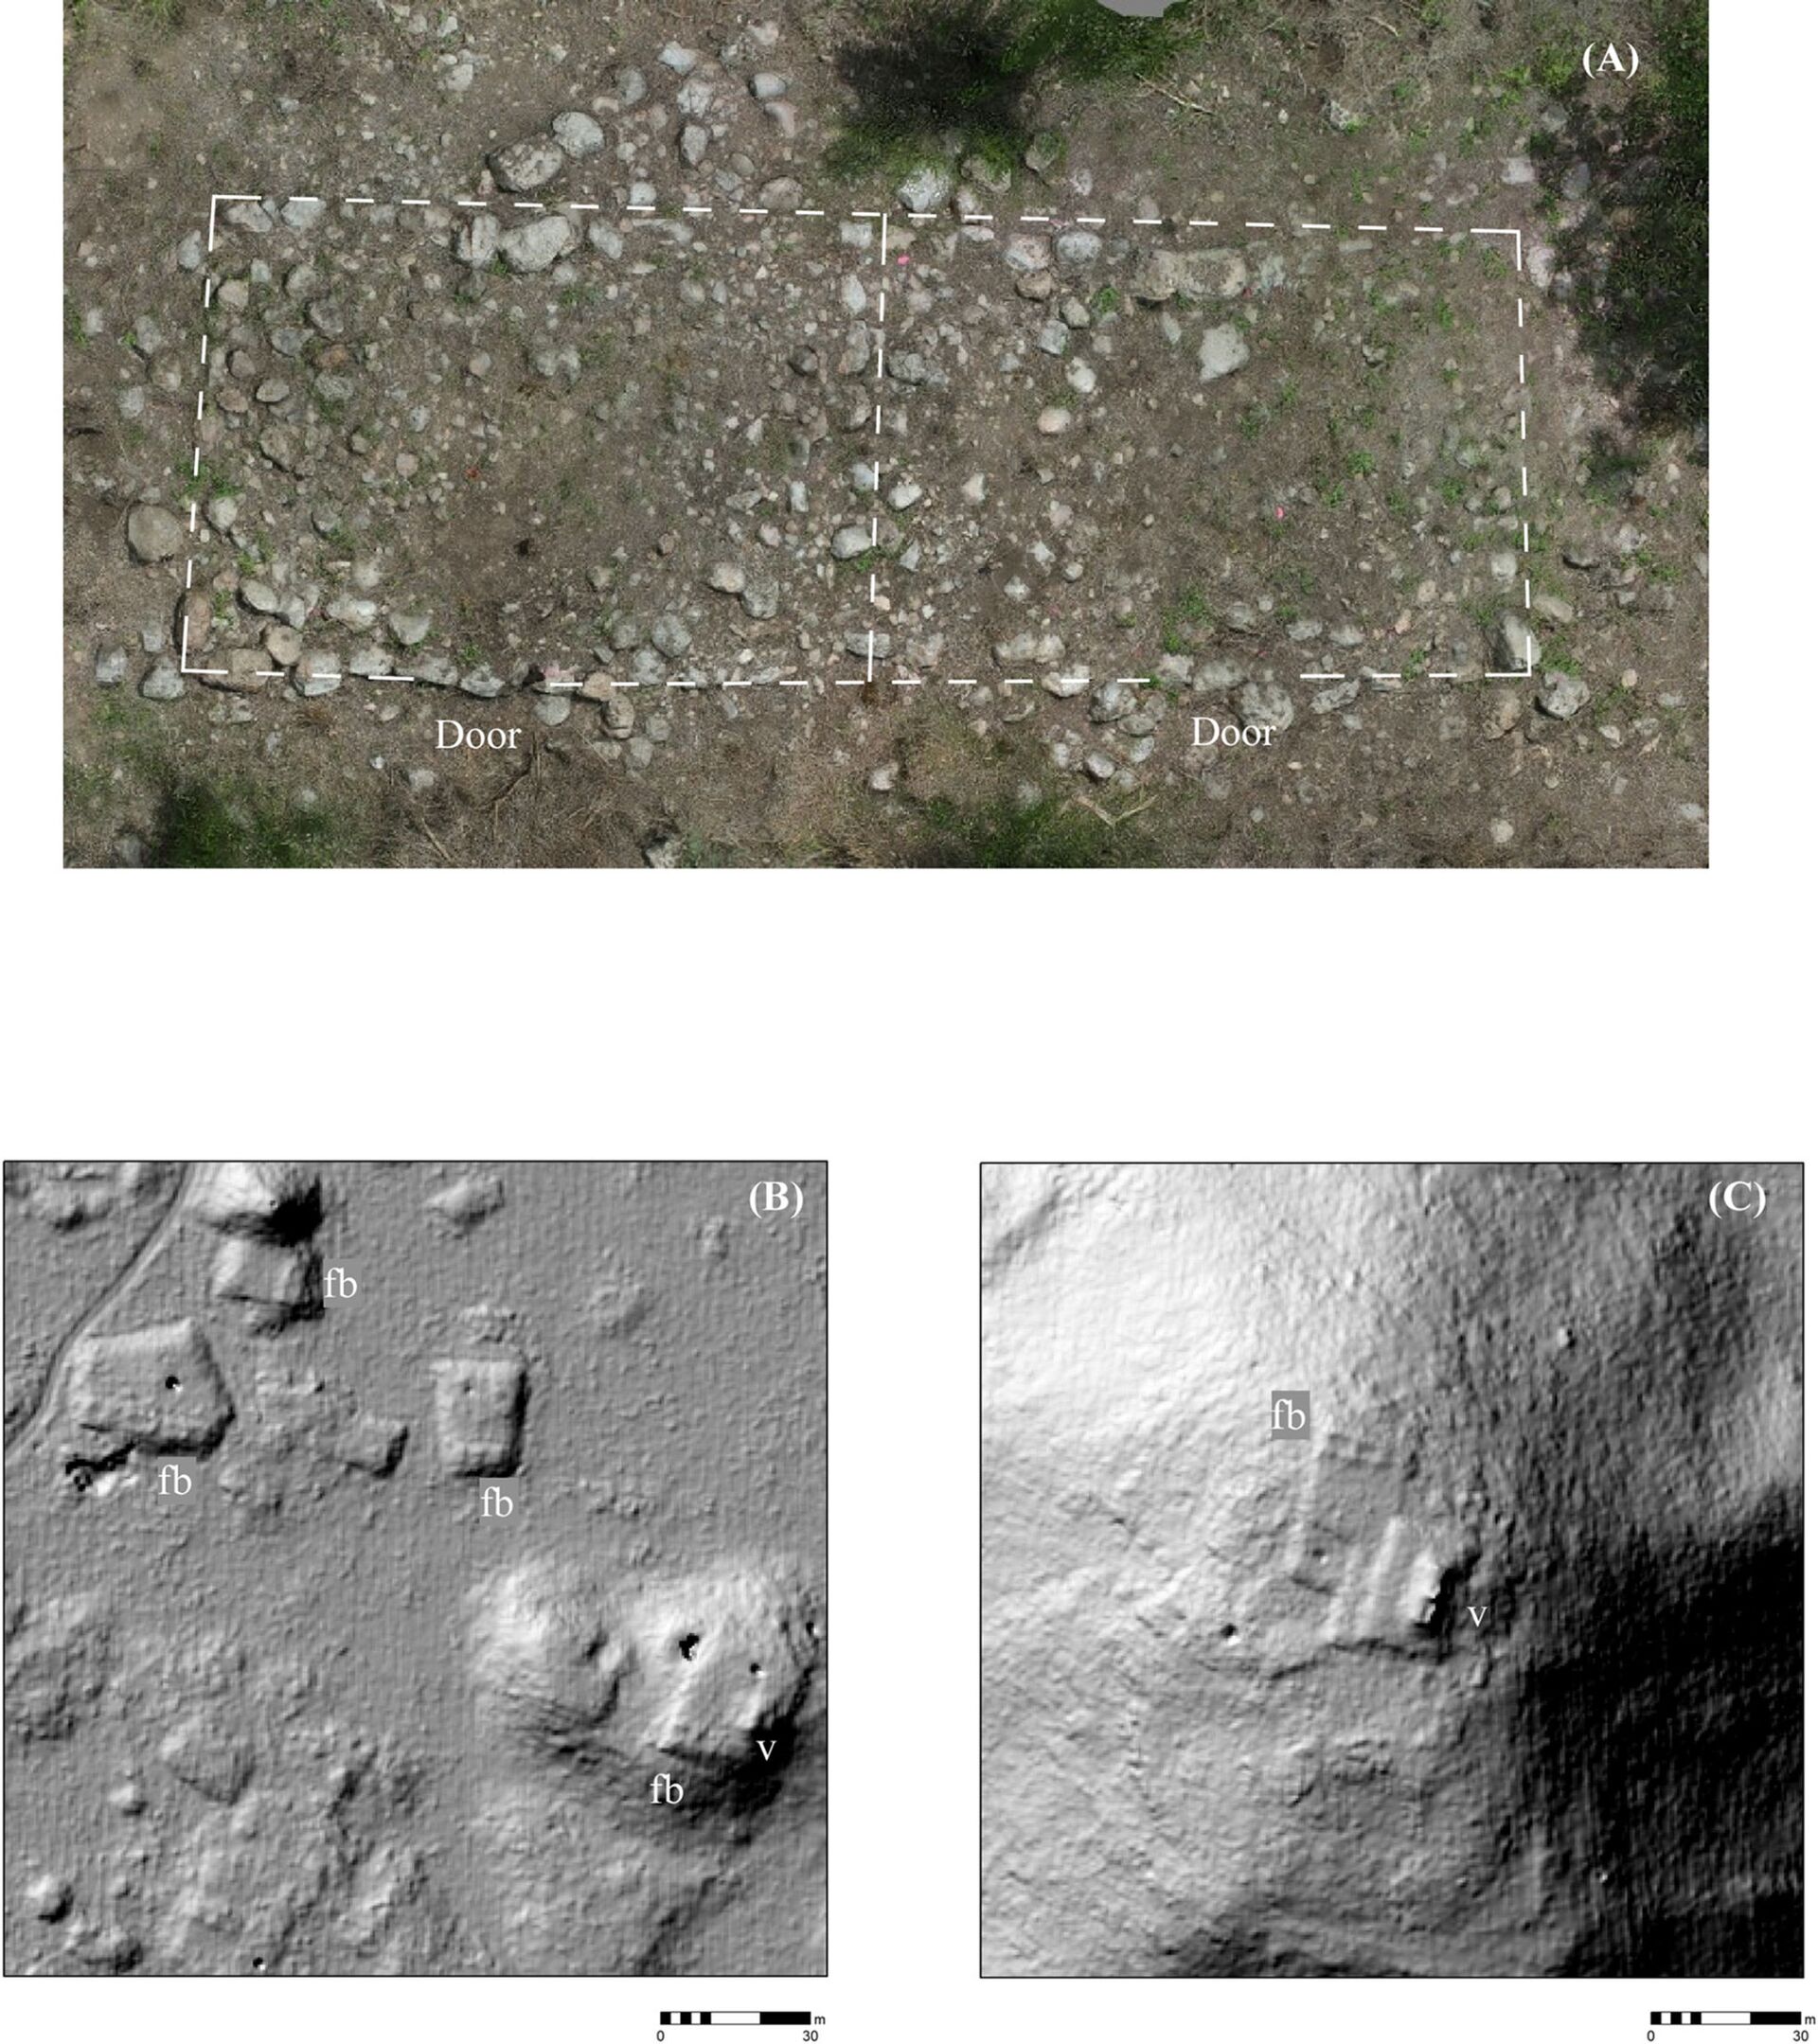 Laser de tecnologia de ponta revela detalhes de sofisticada civilização maia em Iucatã (FOTOS) - Sputnik Brasil, 1920, 03.05.2021